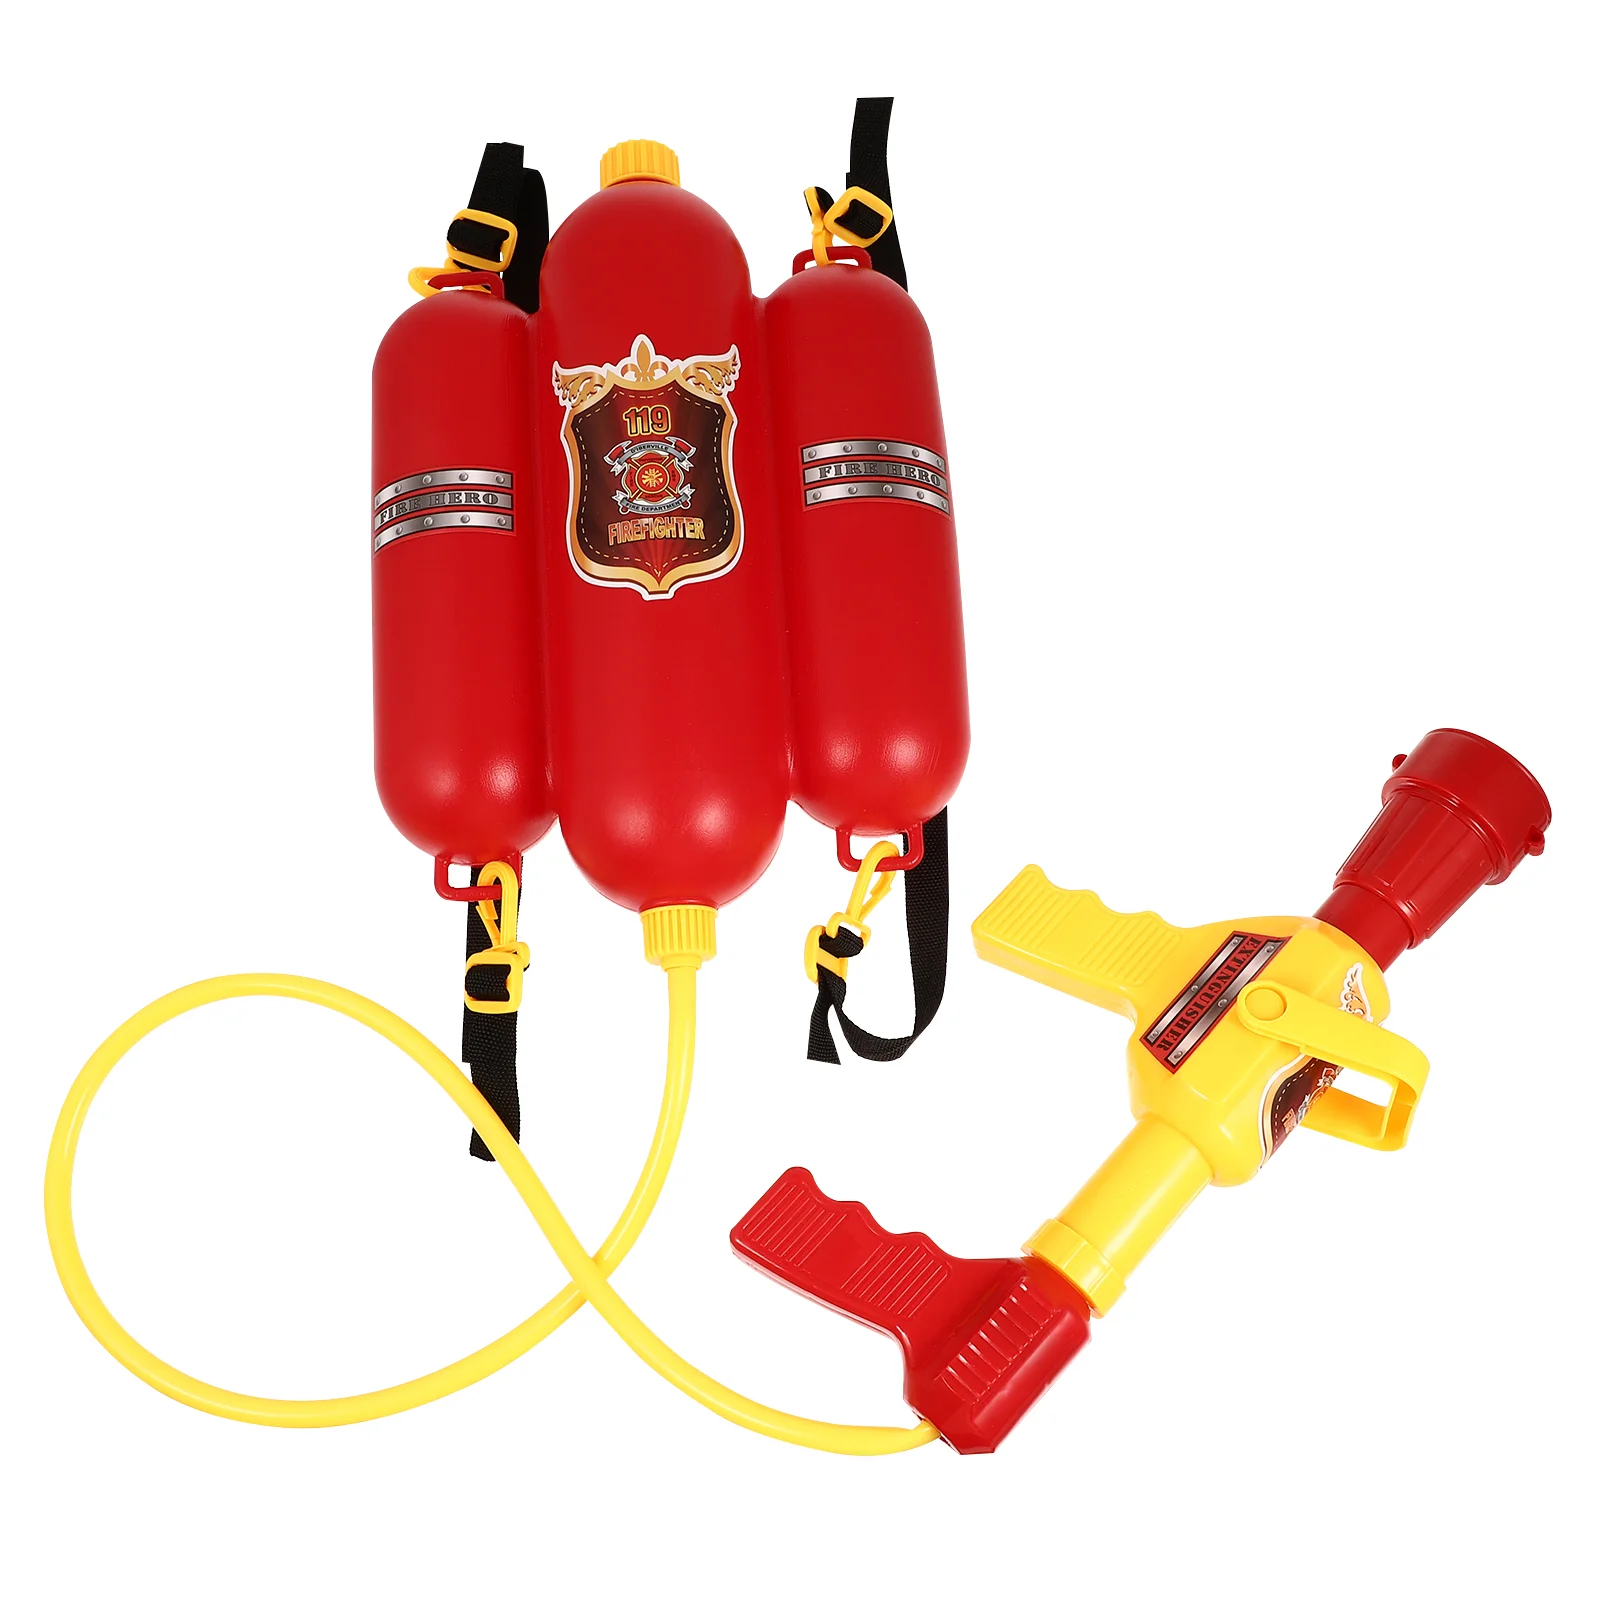 

Большой пламенный рюкзак для детей, Детский Пожарный Сэм, пластиковые игрушки для улицы